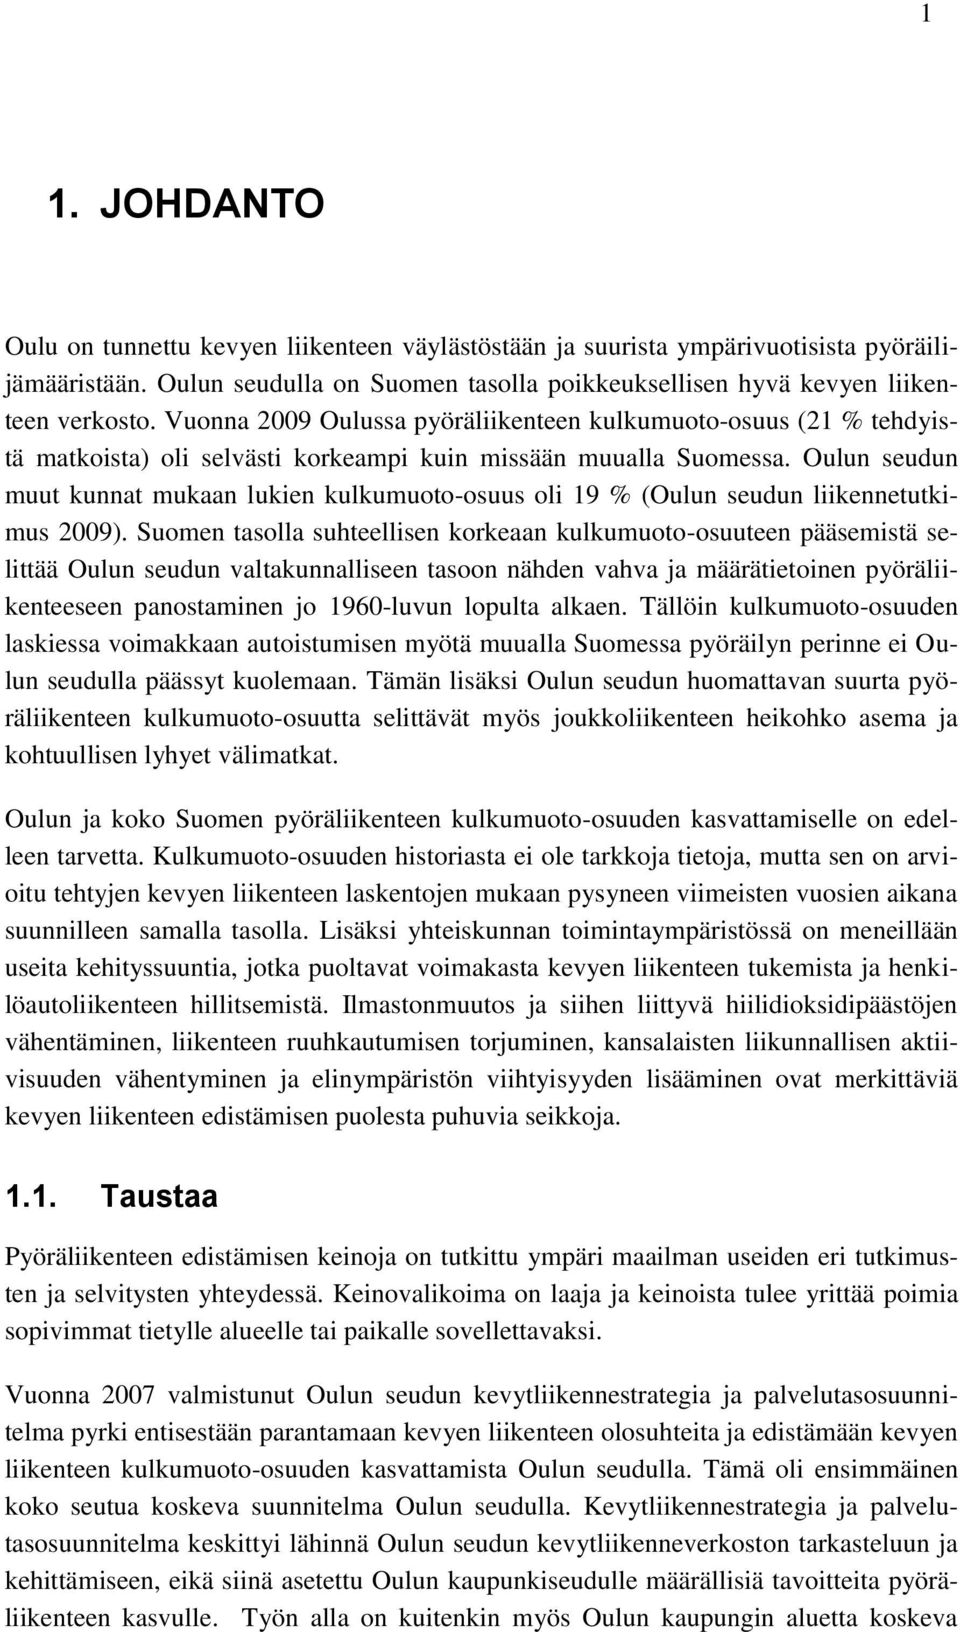 Oulun seudun muut kunnat mukaan lukien kulkumuoto-osuus oli 19 % (Oulun seudun liikennetutkimus 2009).